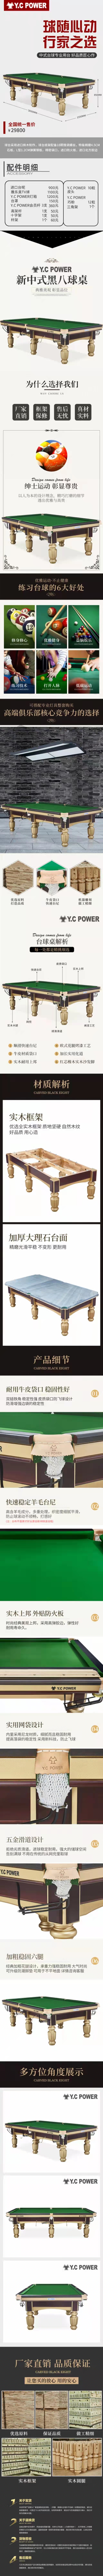  星牌中式钢库台球桌 金腿系列(图1)